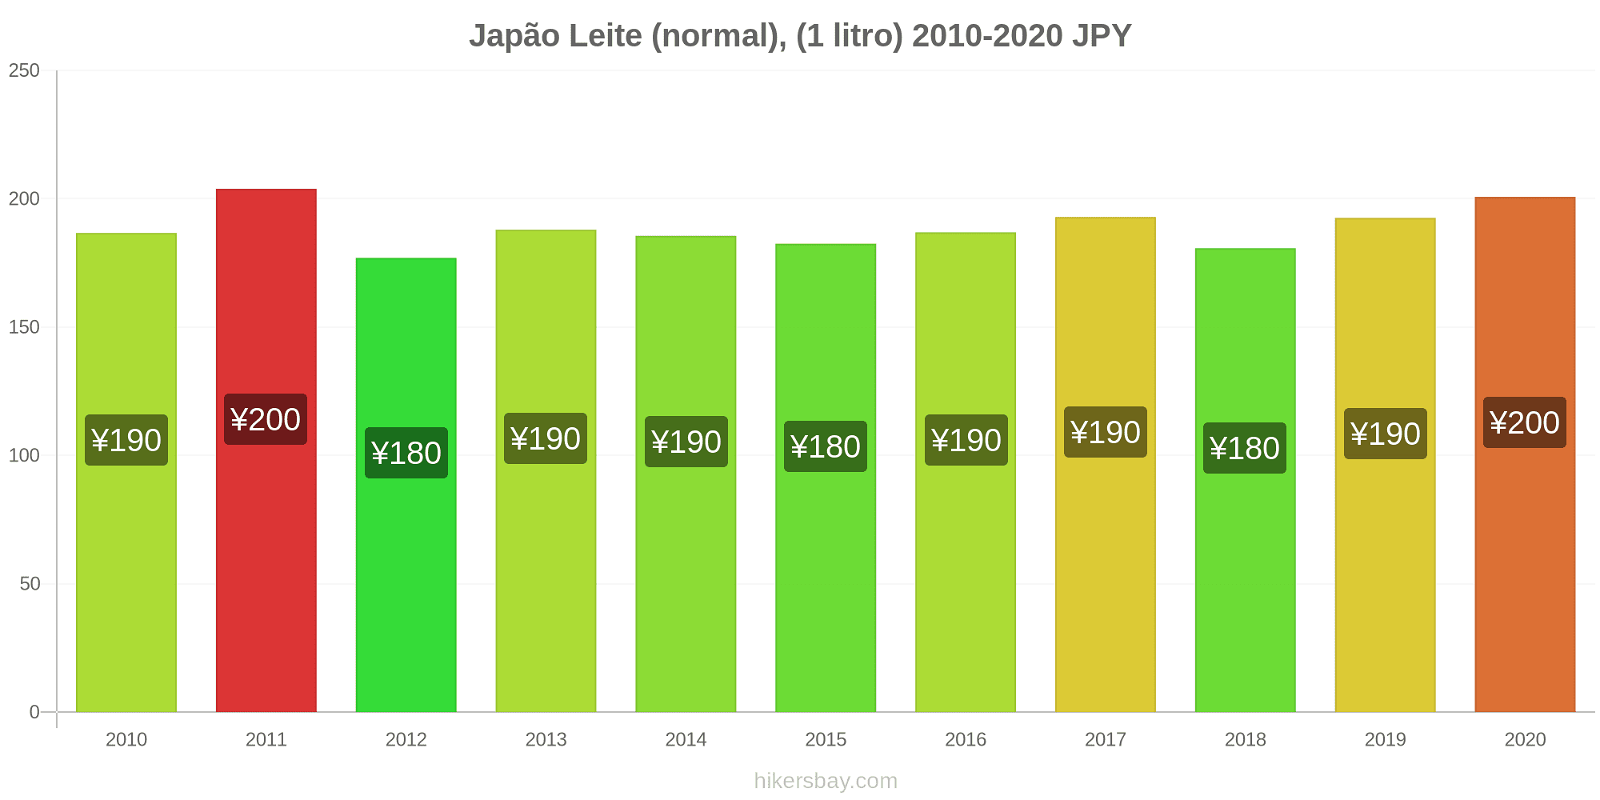 Japão variação de preço (Regular), leite (1 litro) hikersbay.com